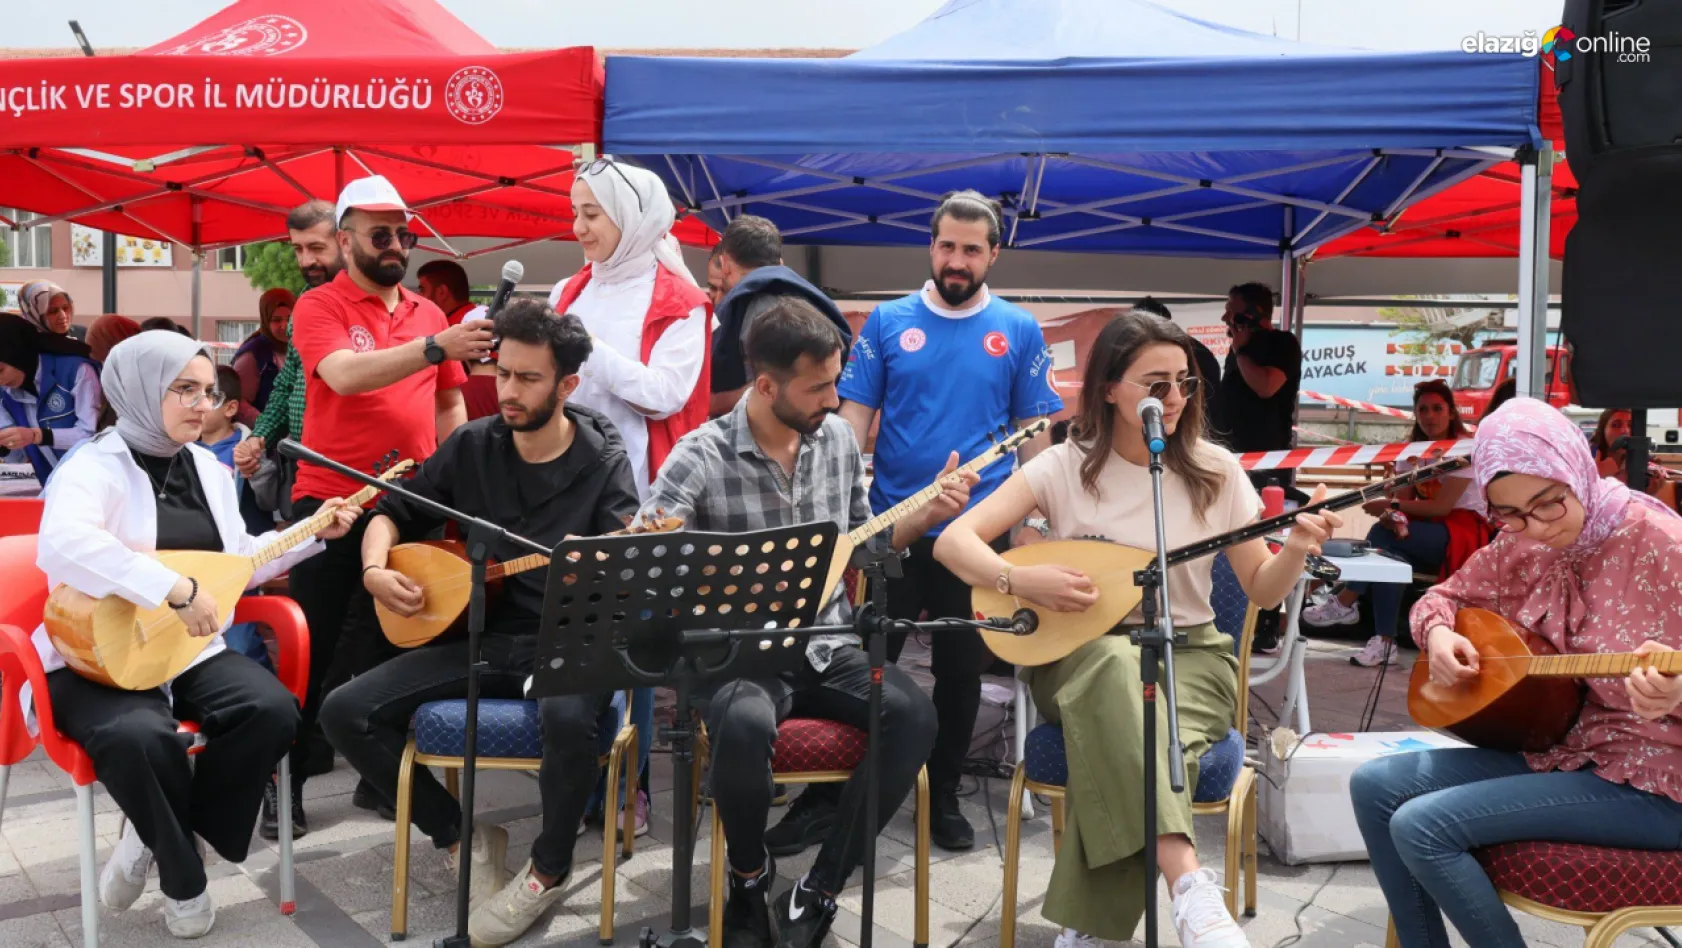 Elazığ'da 'Sosyal medyadan sosyal meydana' etkinliğine yoğun ilgi